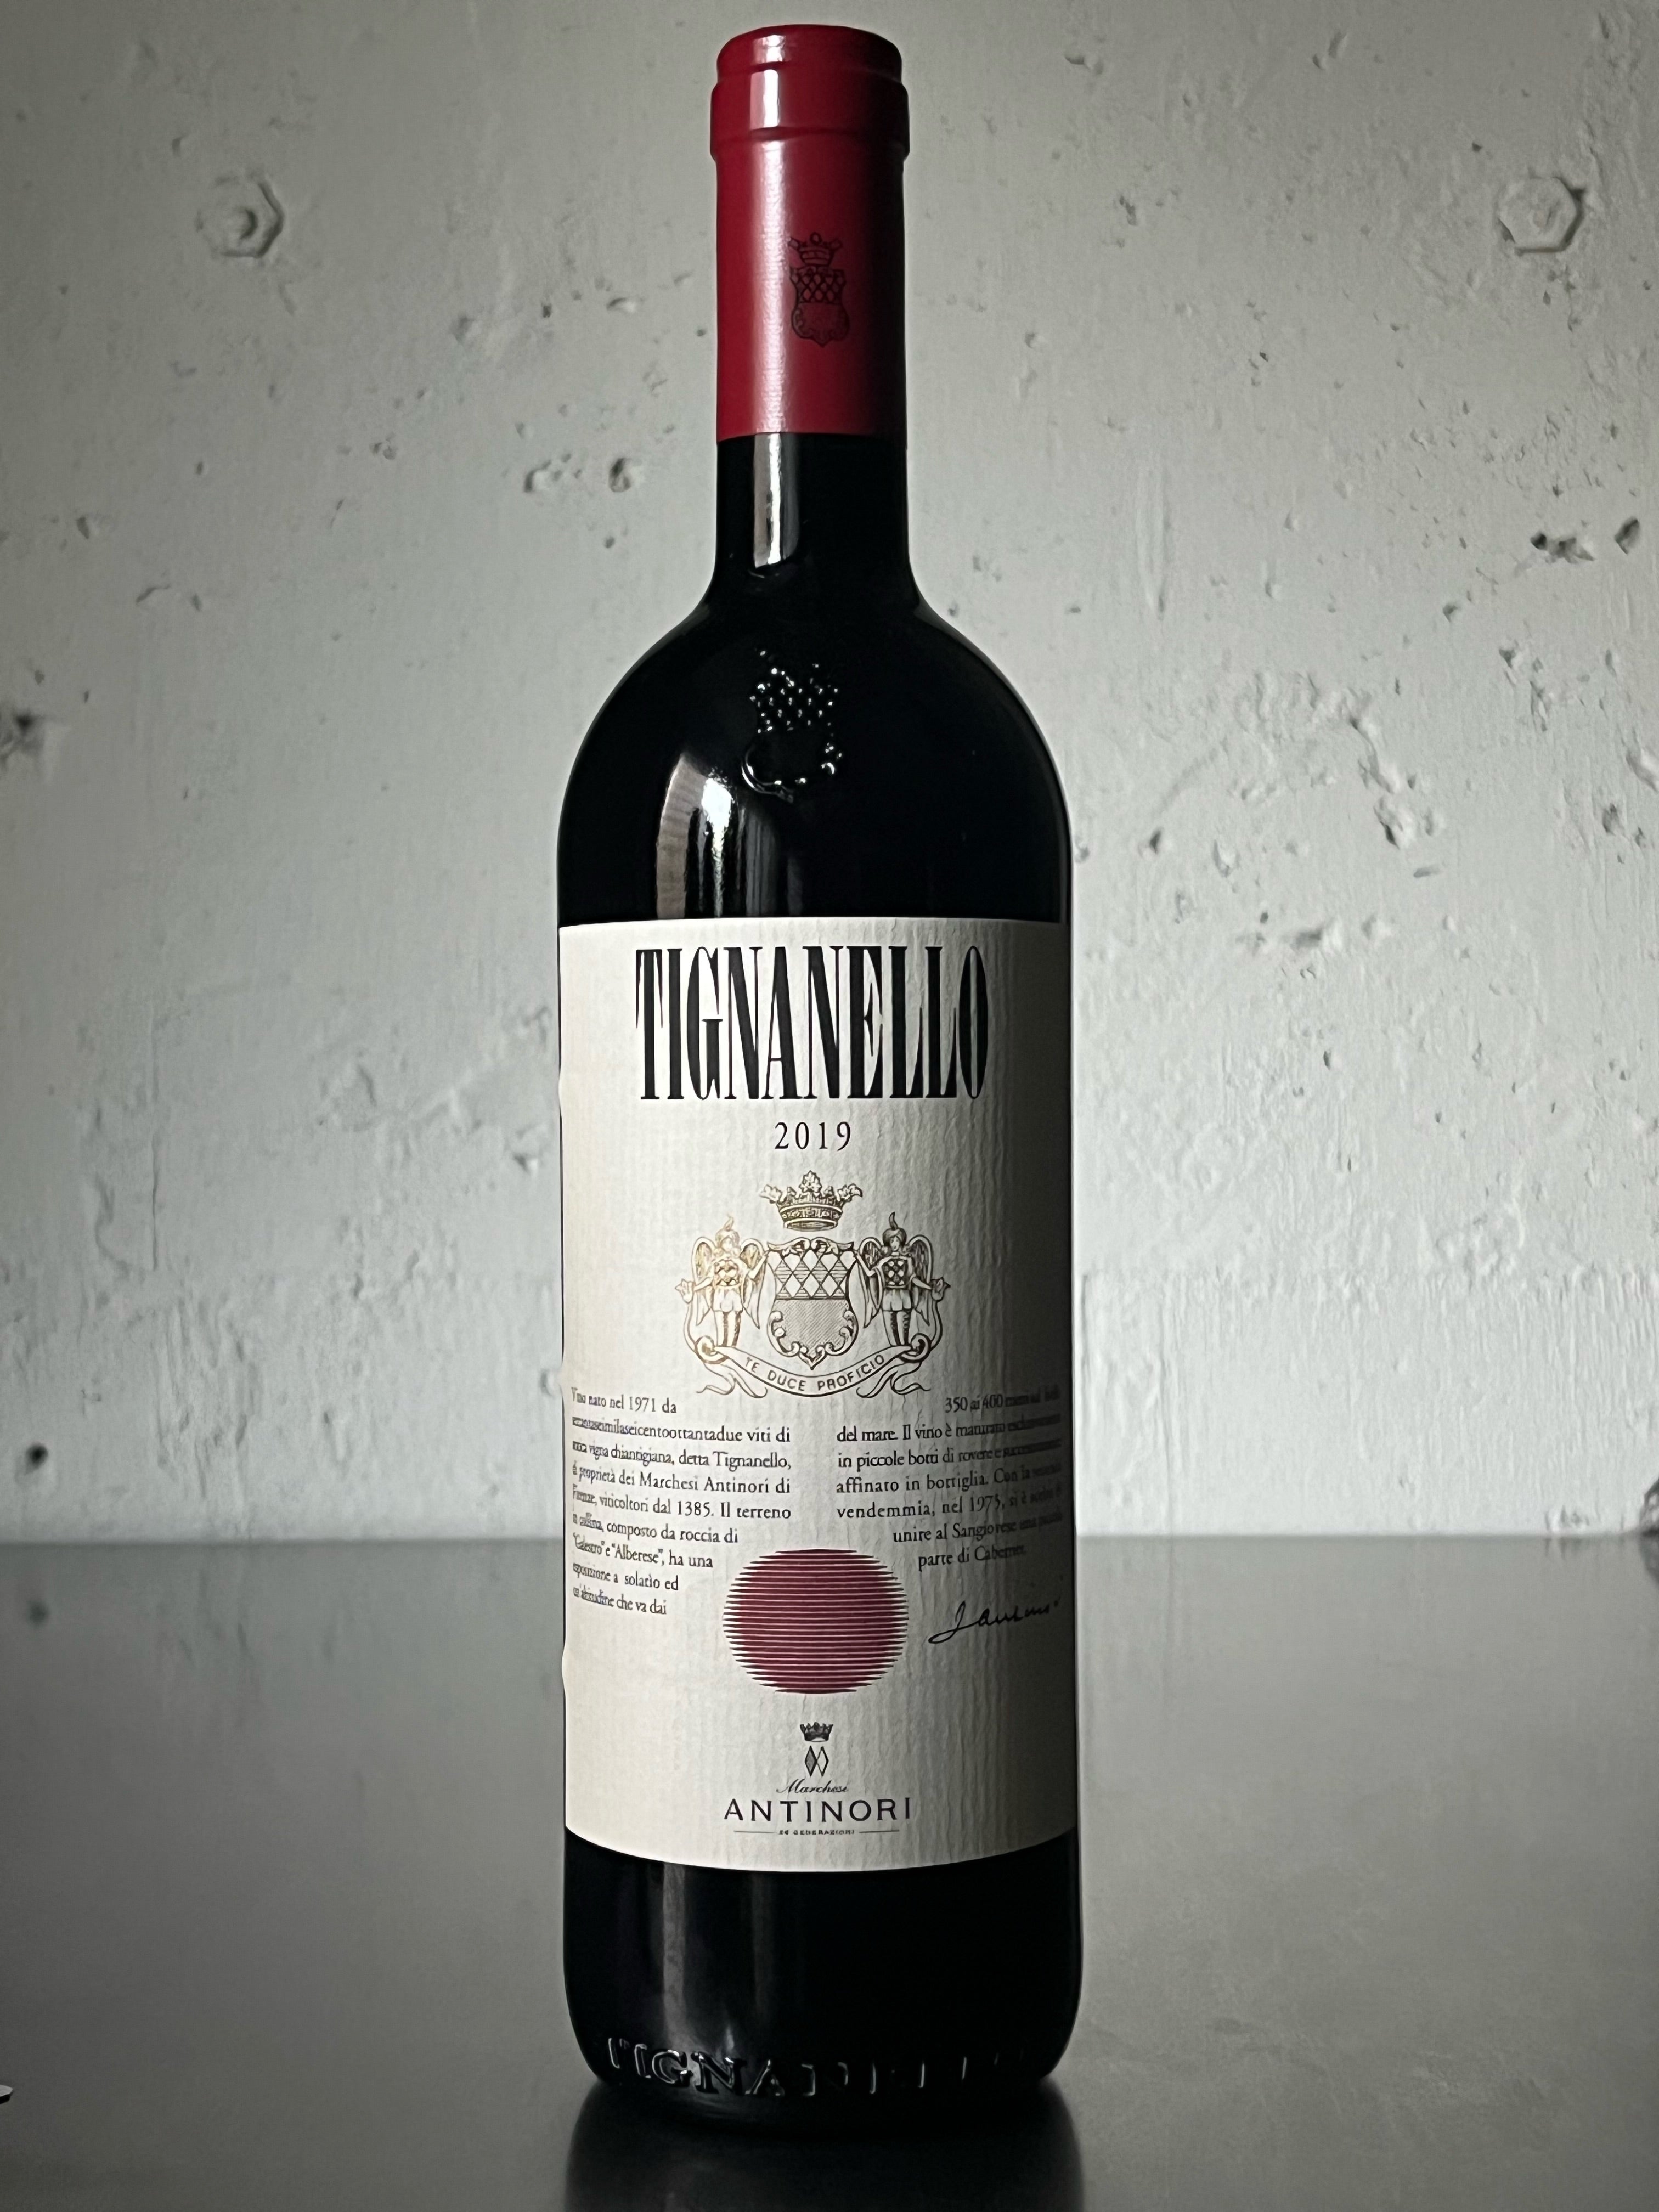 ティニャネロ2019 アンティノリ 2本セット - ワイン